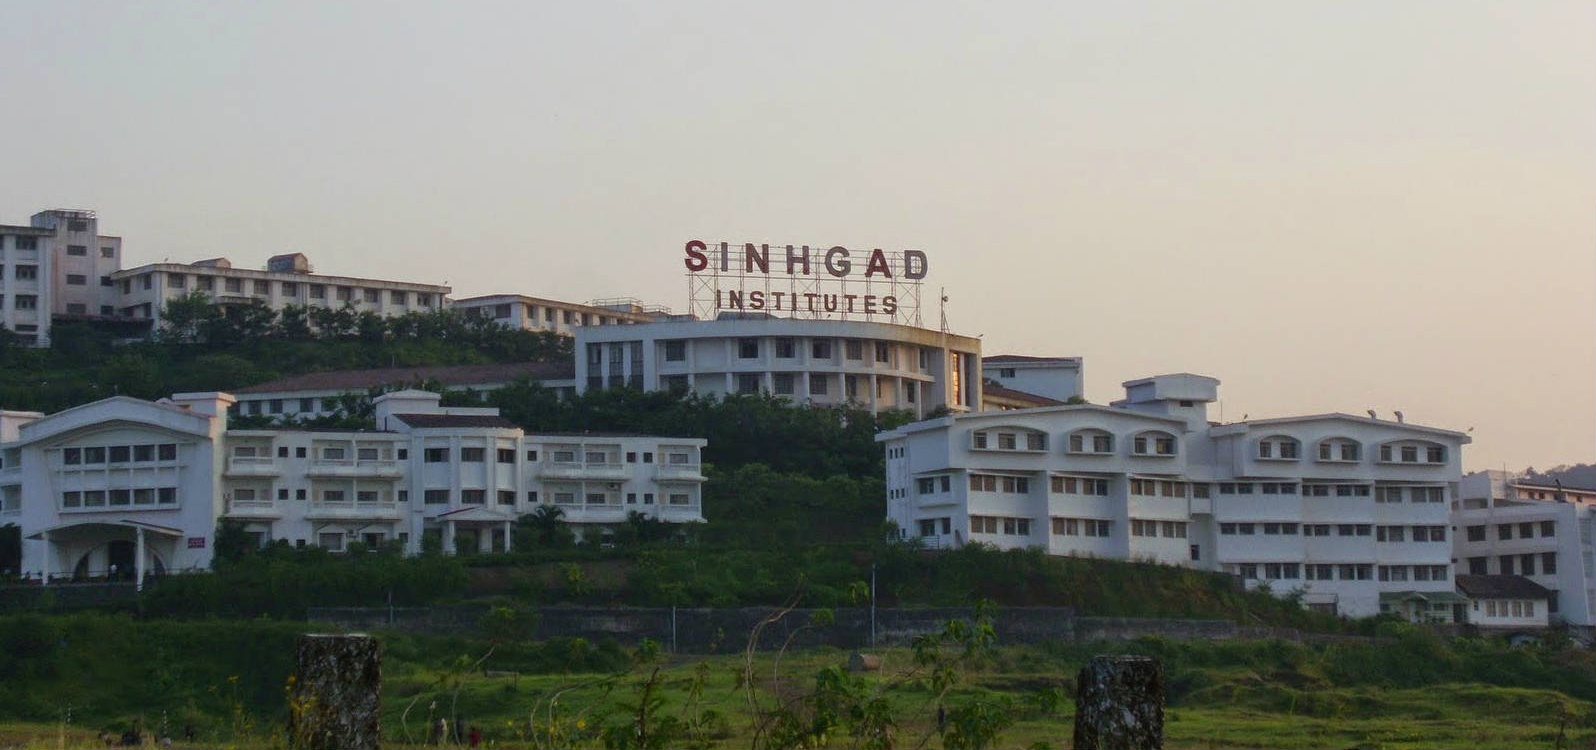 Sinhgad Institutes, Pune